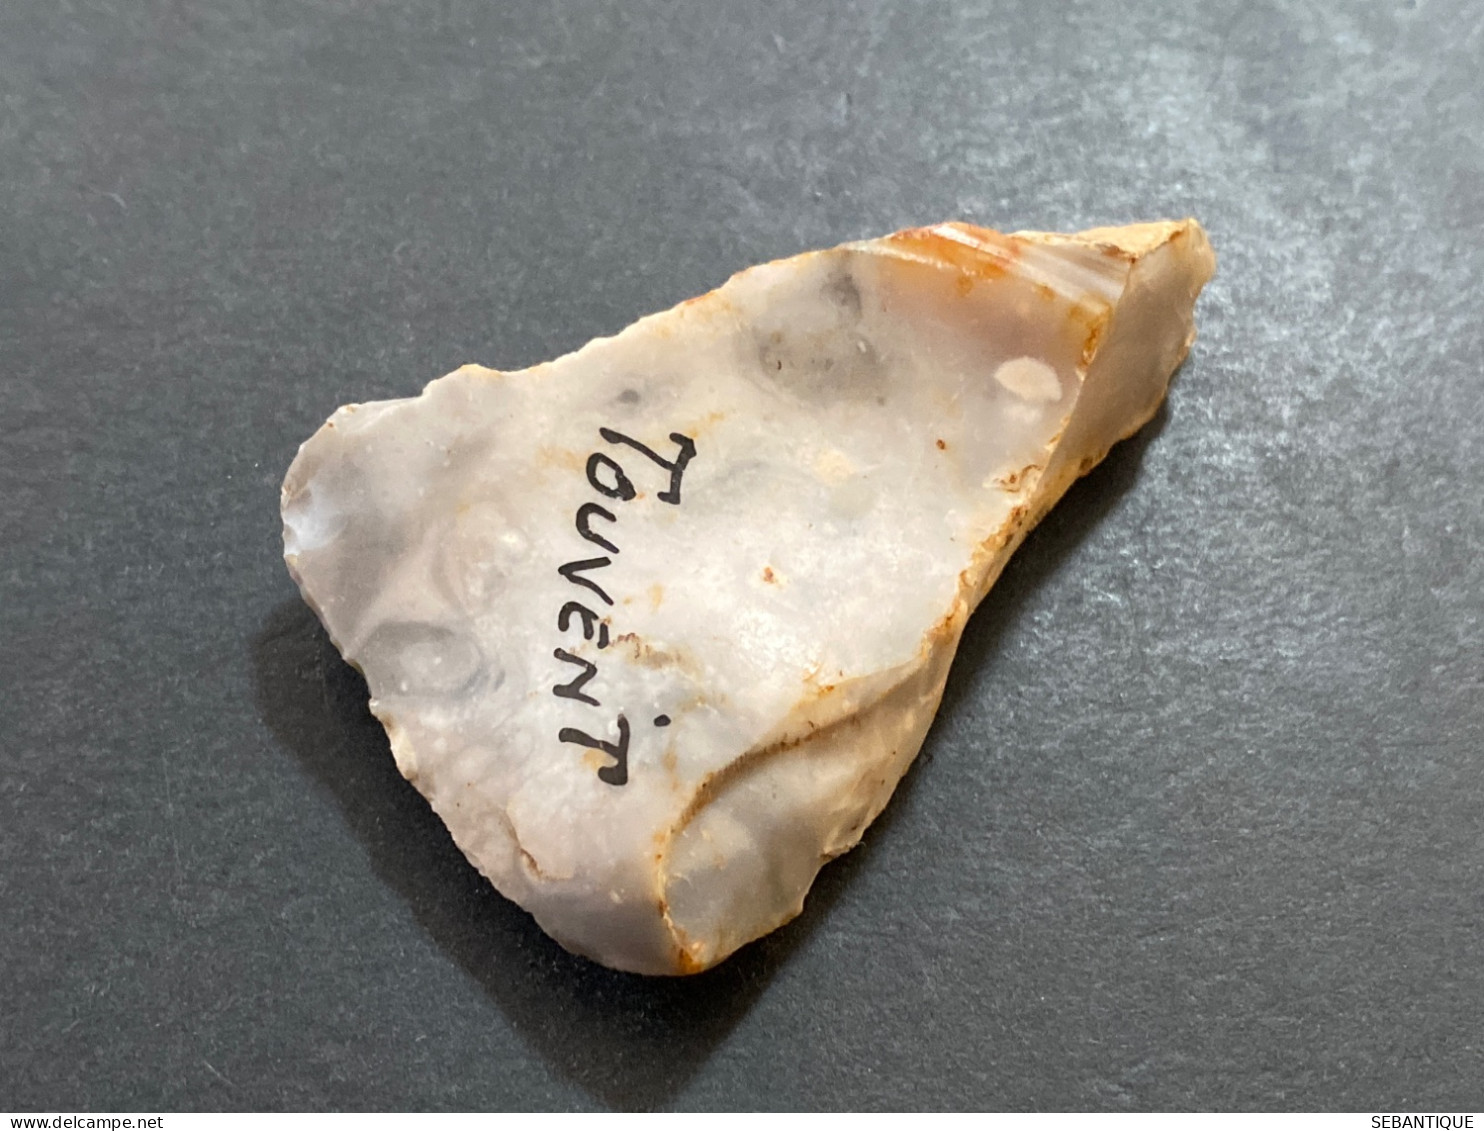 L7 Silex Racloir Trouvée à Touvent  (Oise) Longueur 6 Cm Néolithique - Arqueología